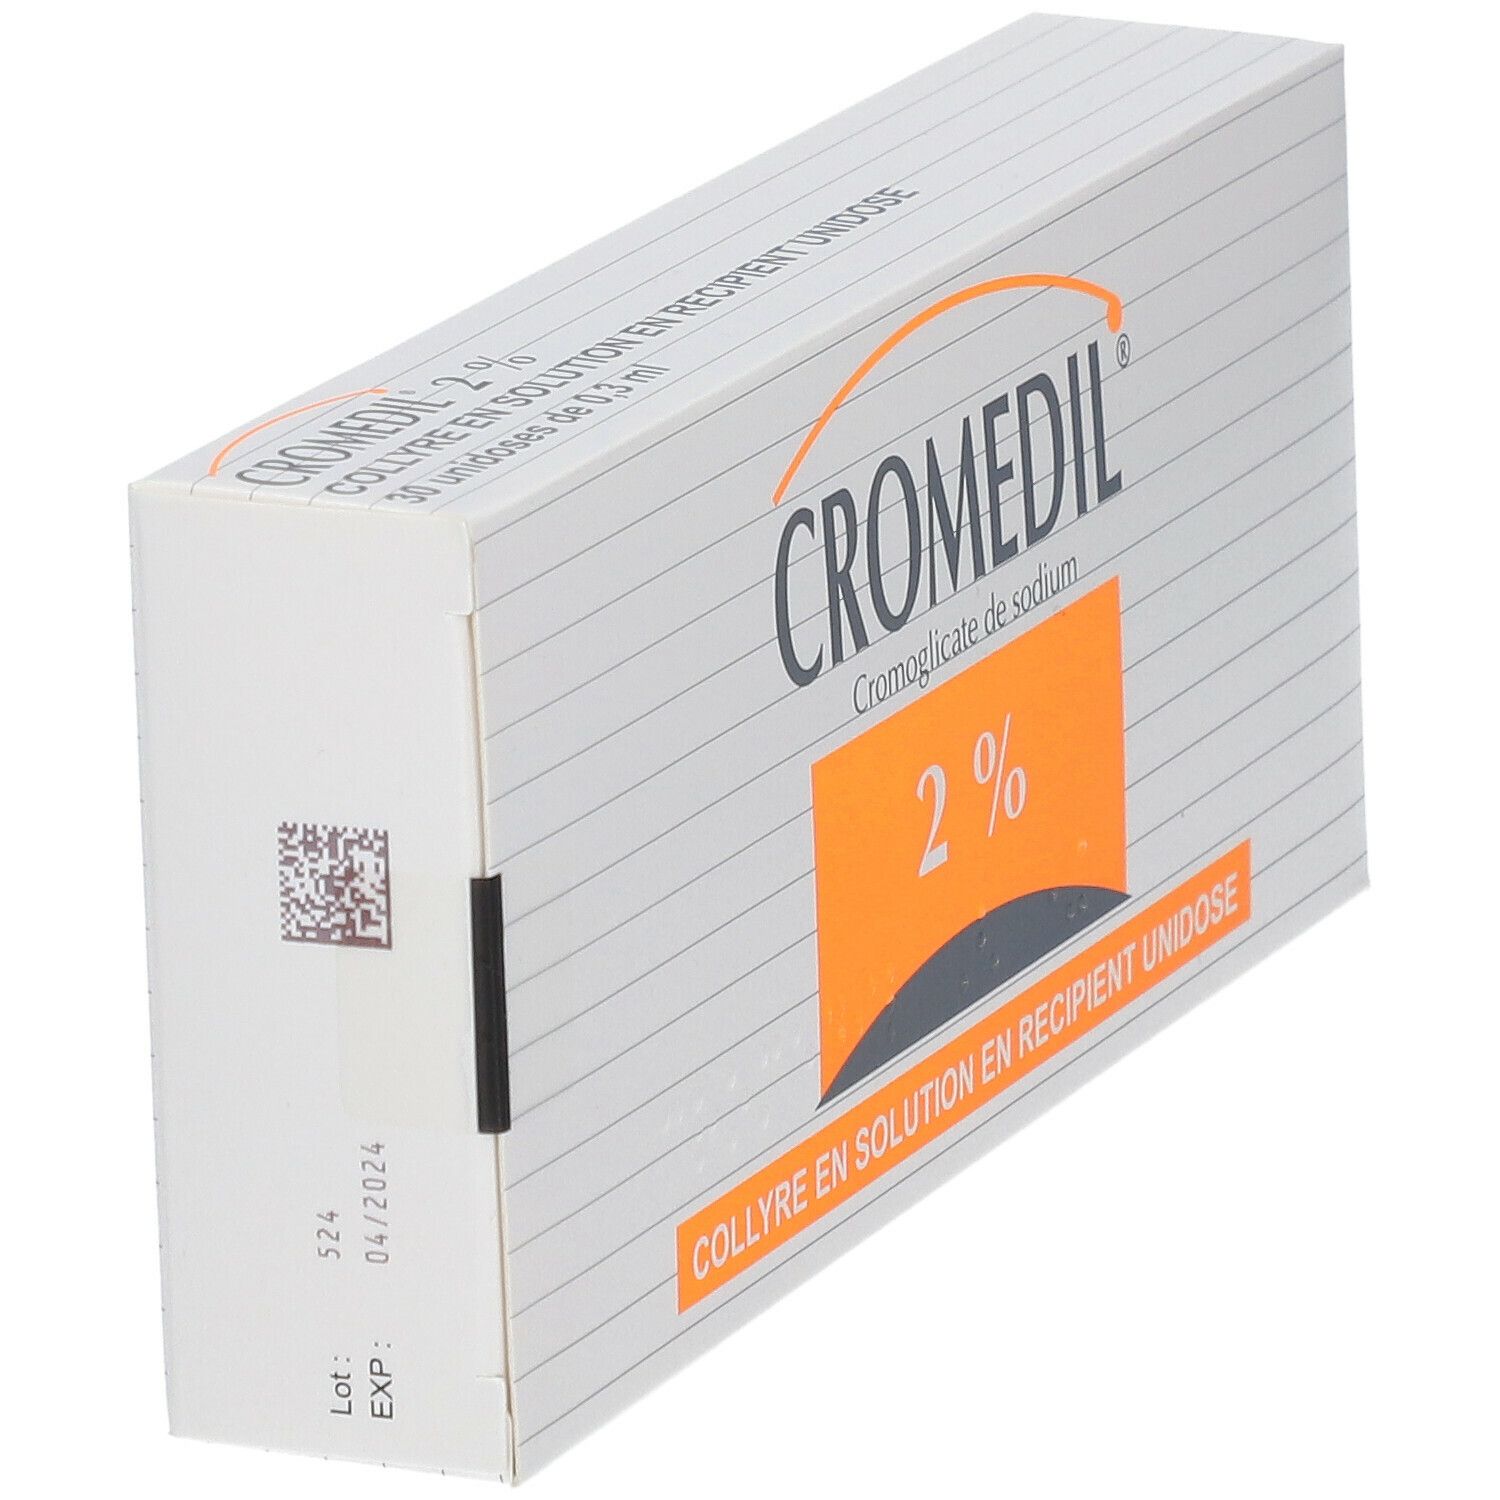 Cromedil® 2 %